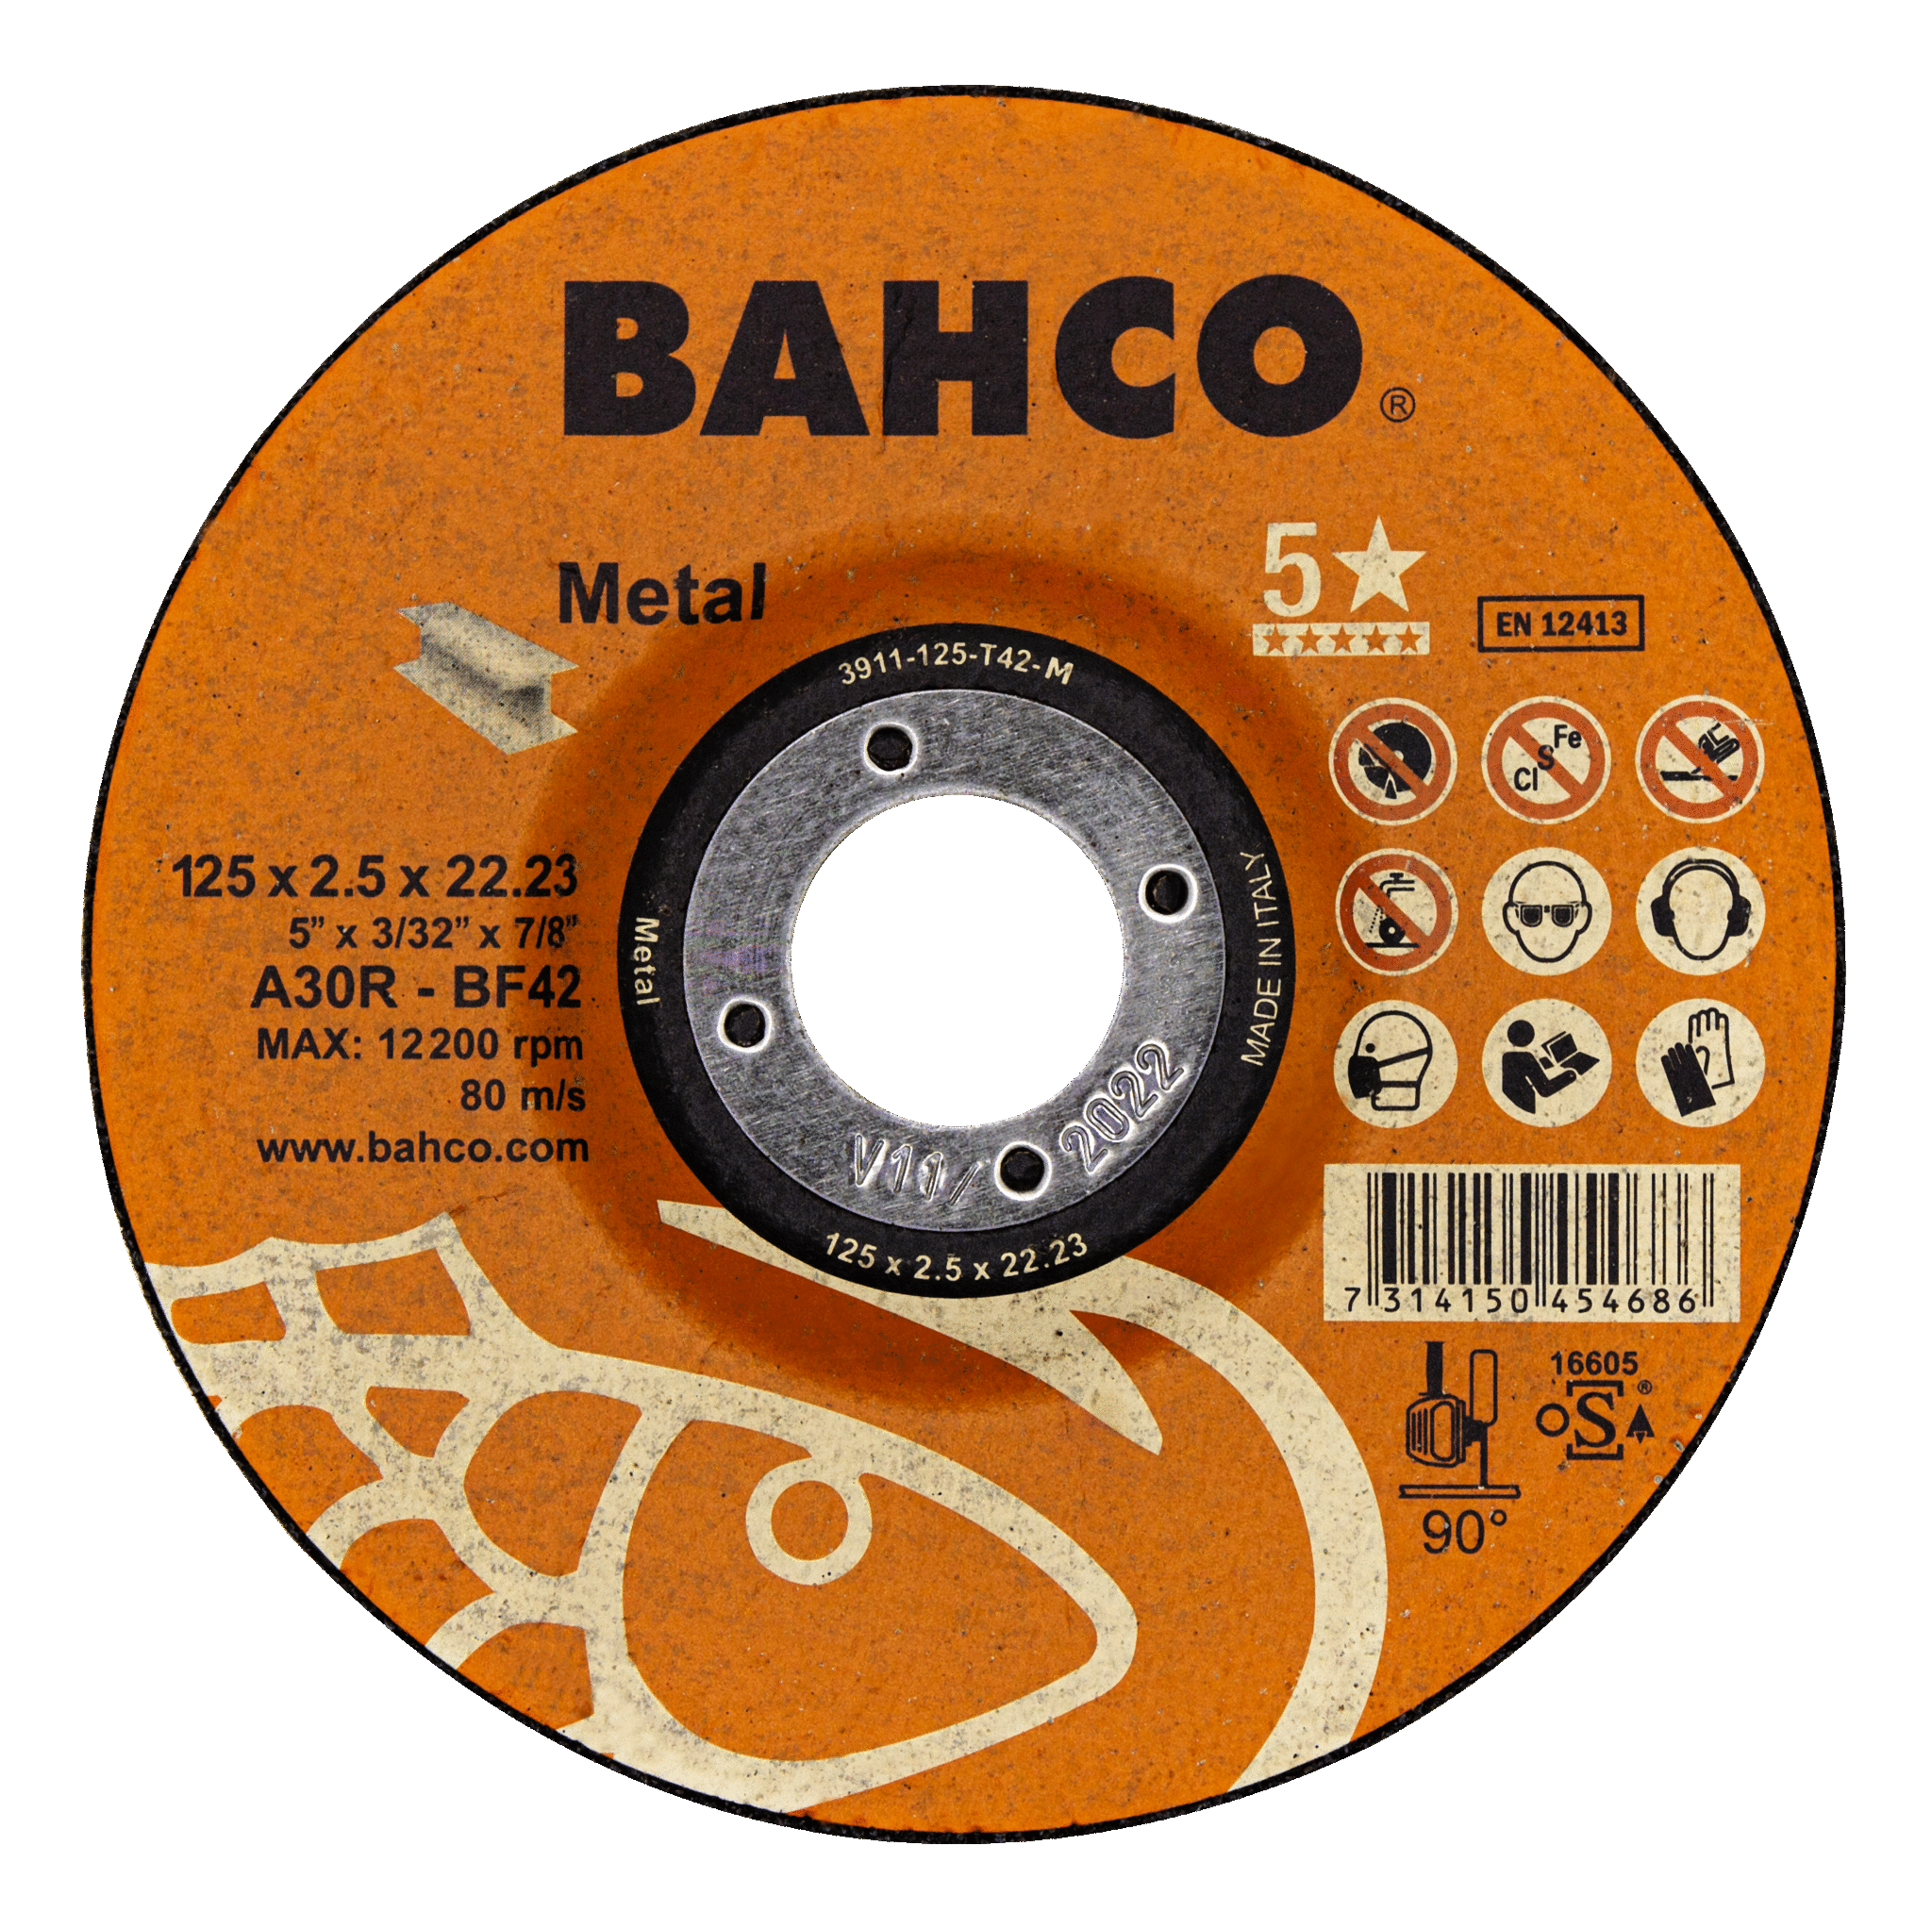 Высокопроизводительные дисковые пилы для металла 180 x 3.2 x 22.23mm BAHCO 3911-180-T42-M